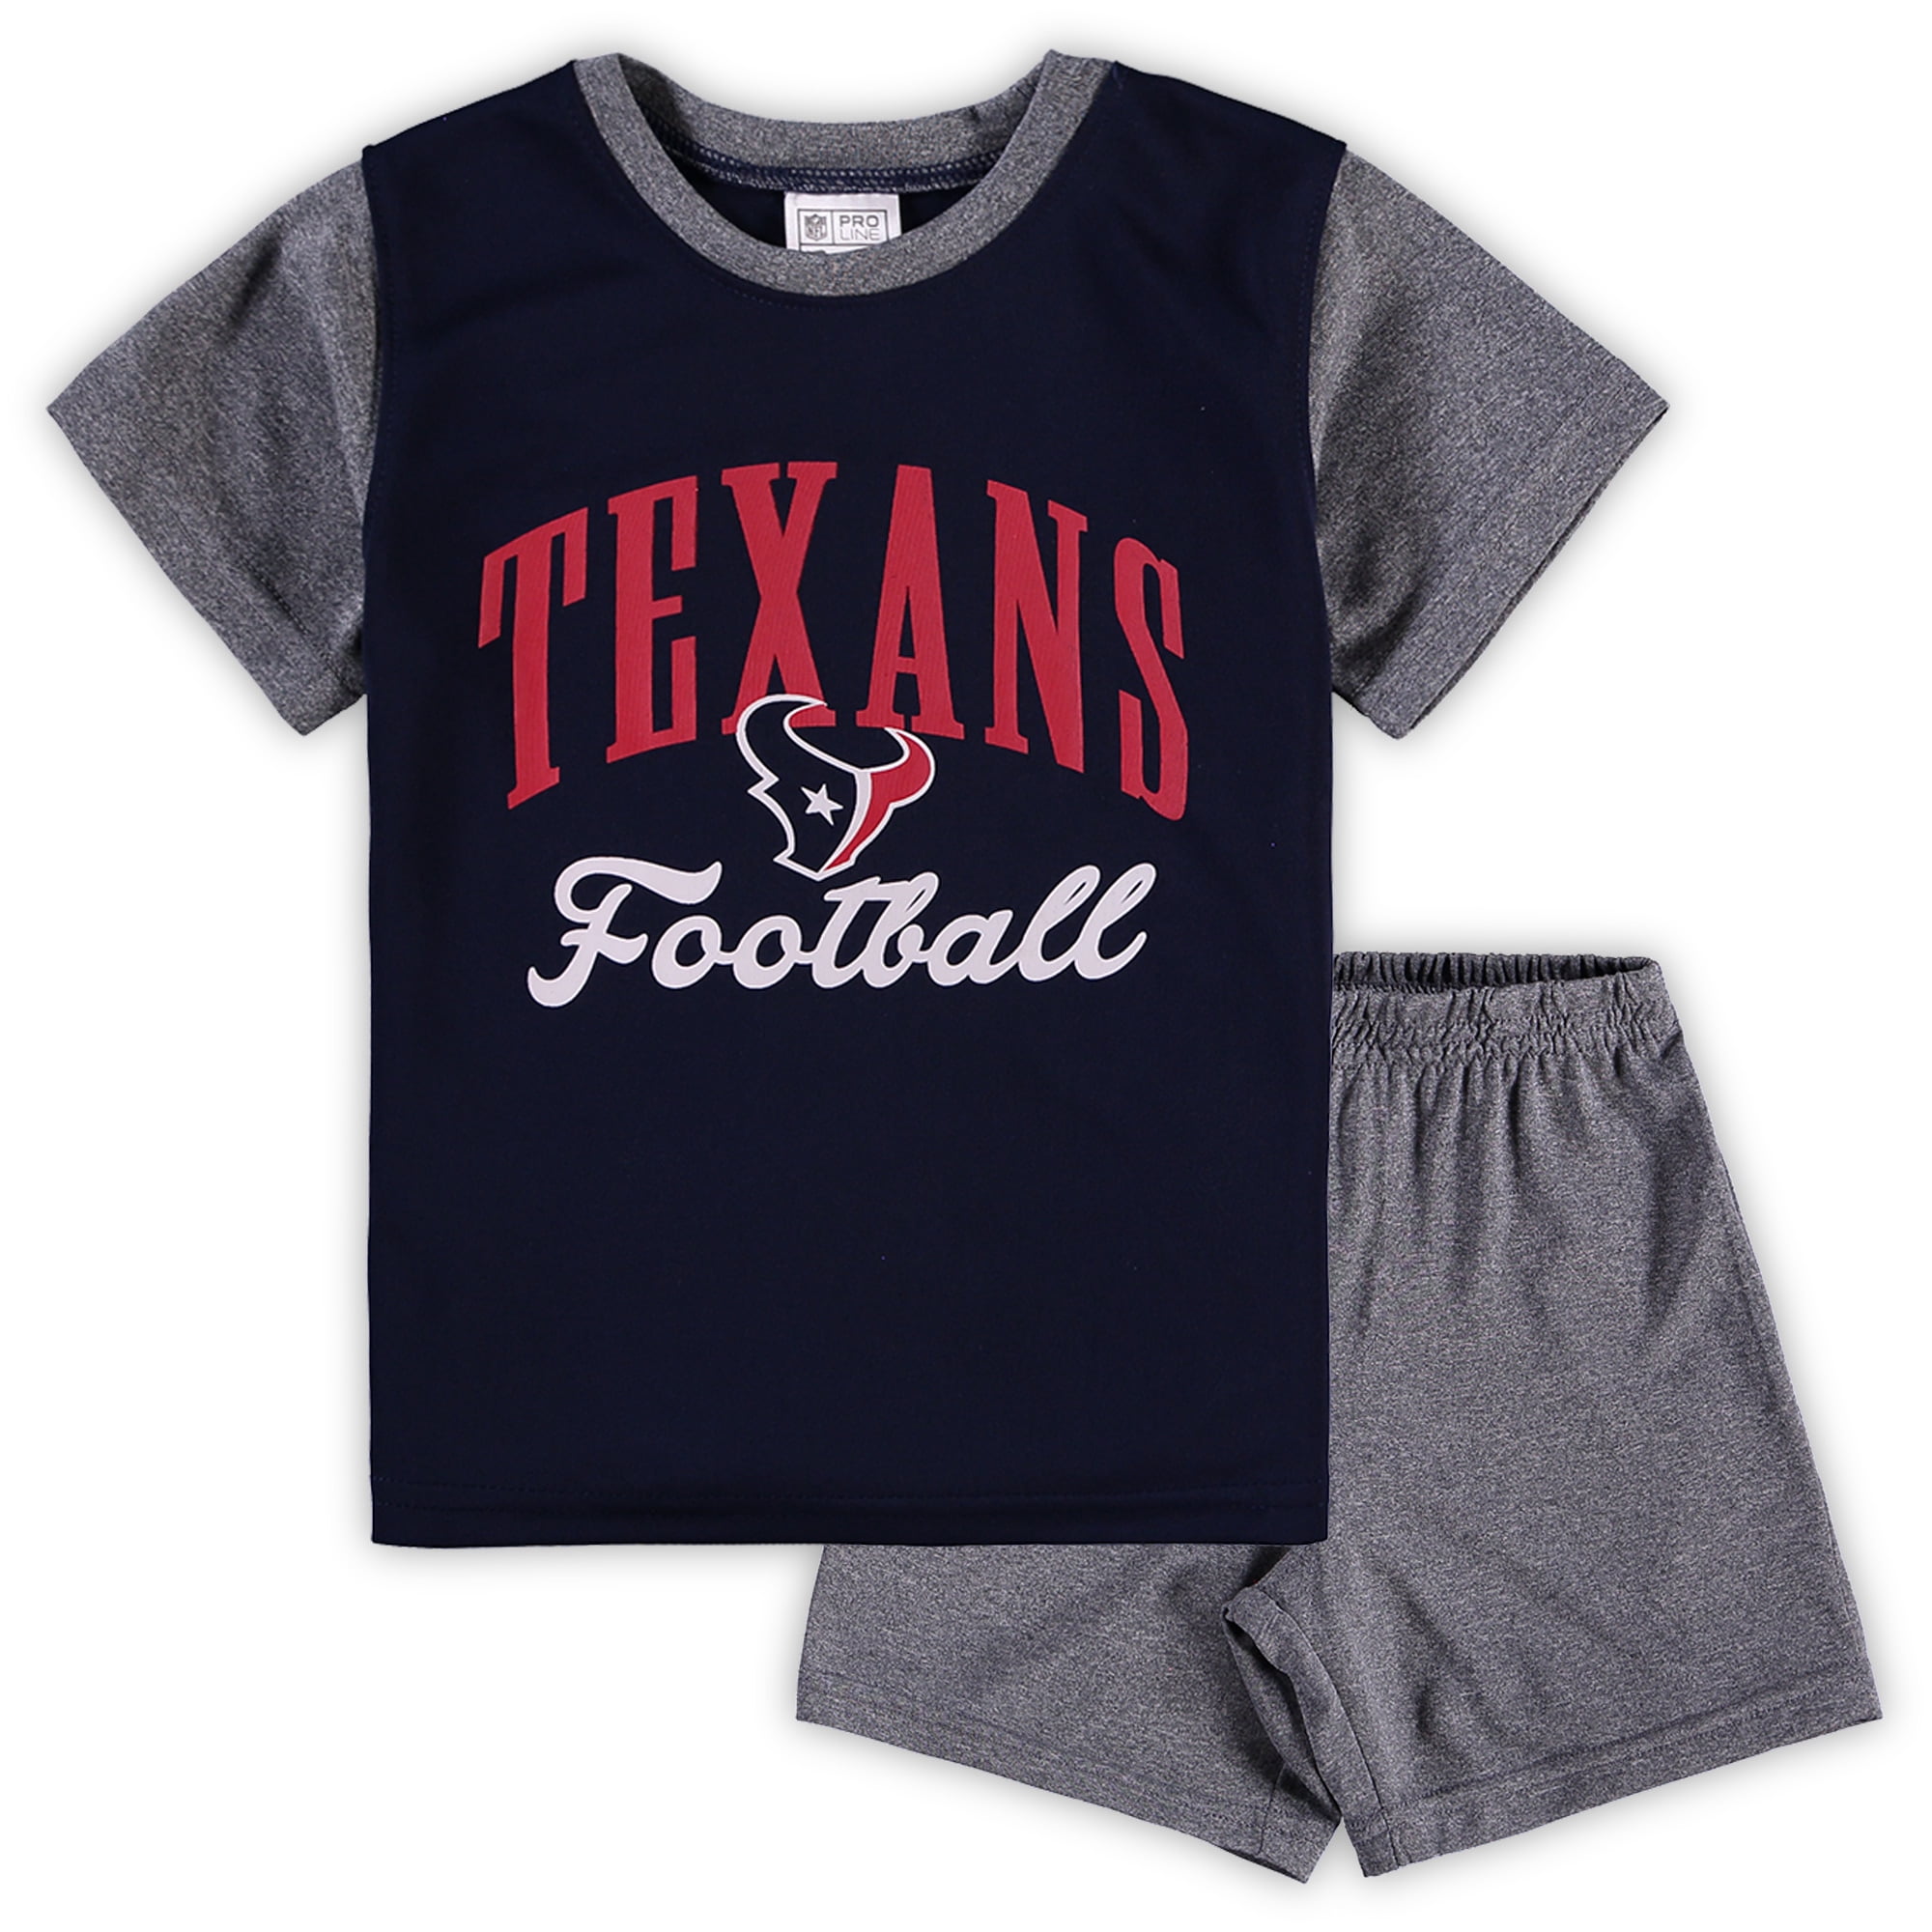 toddler texans shirt